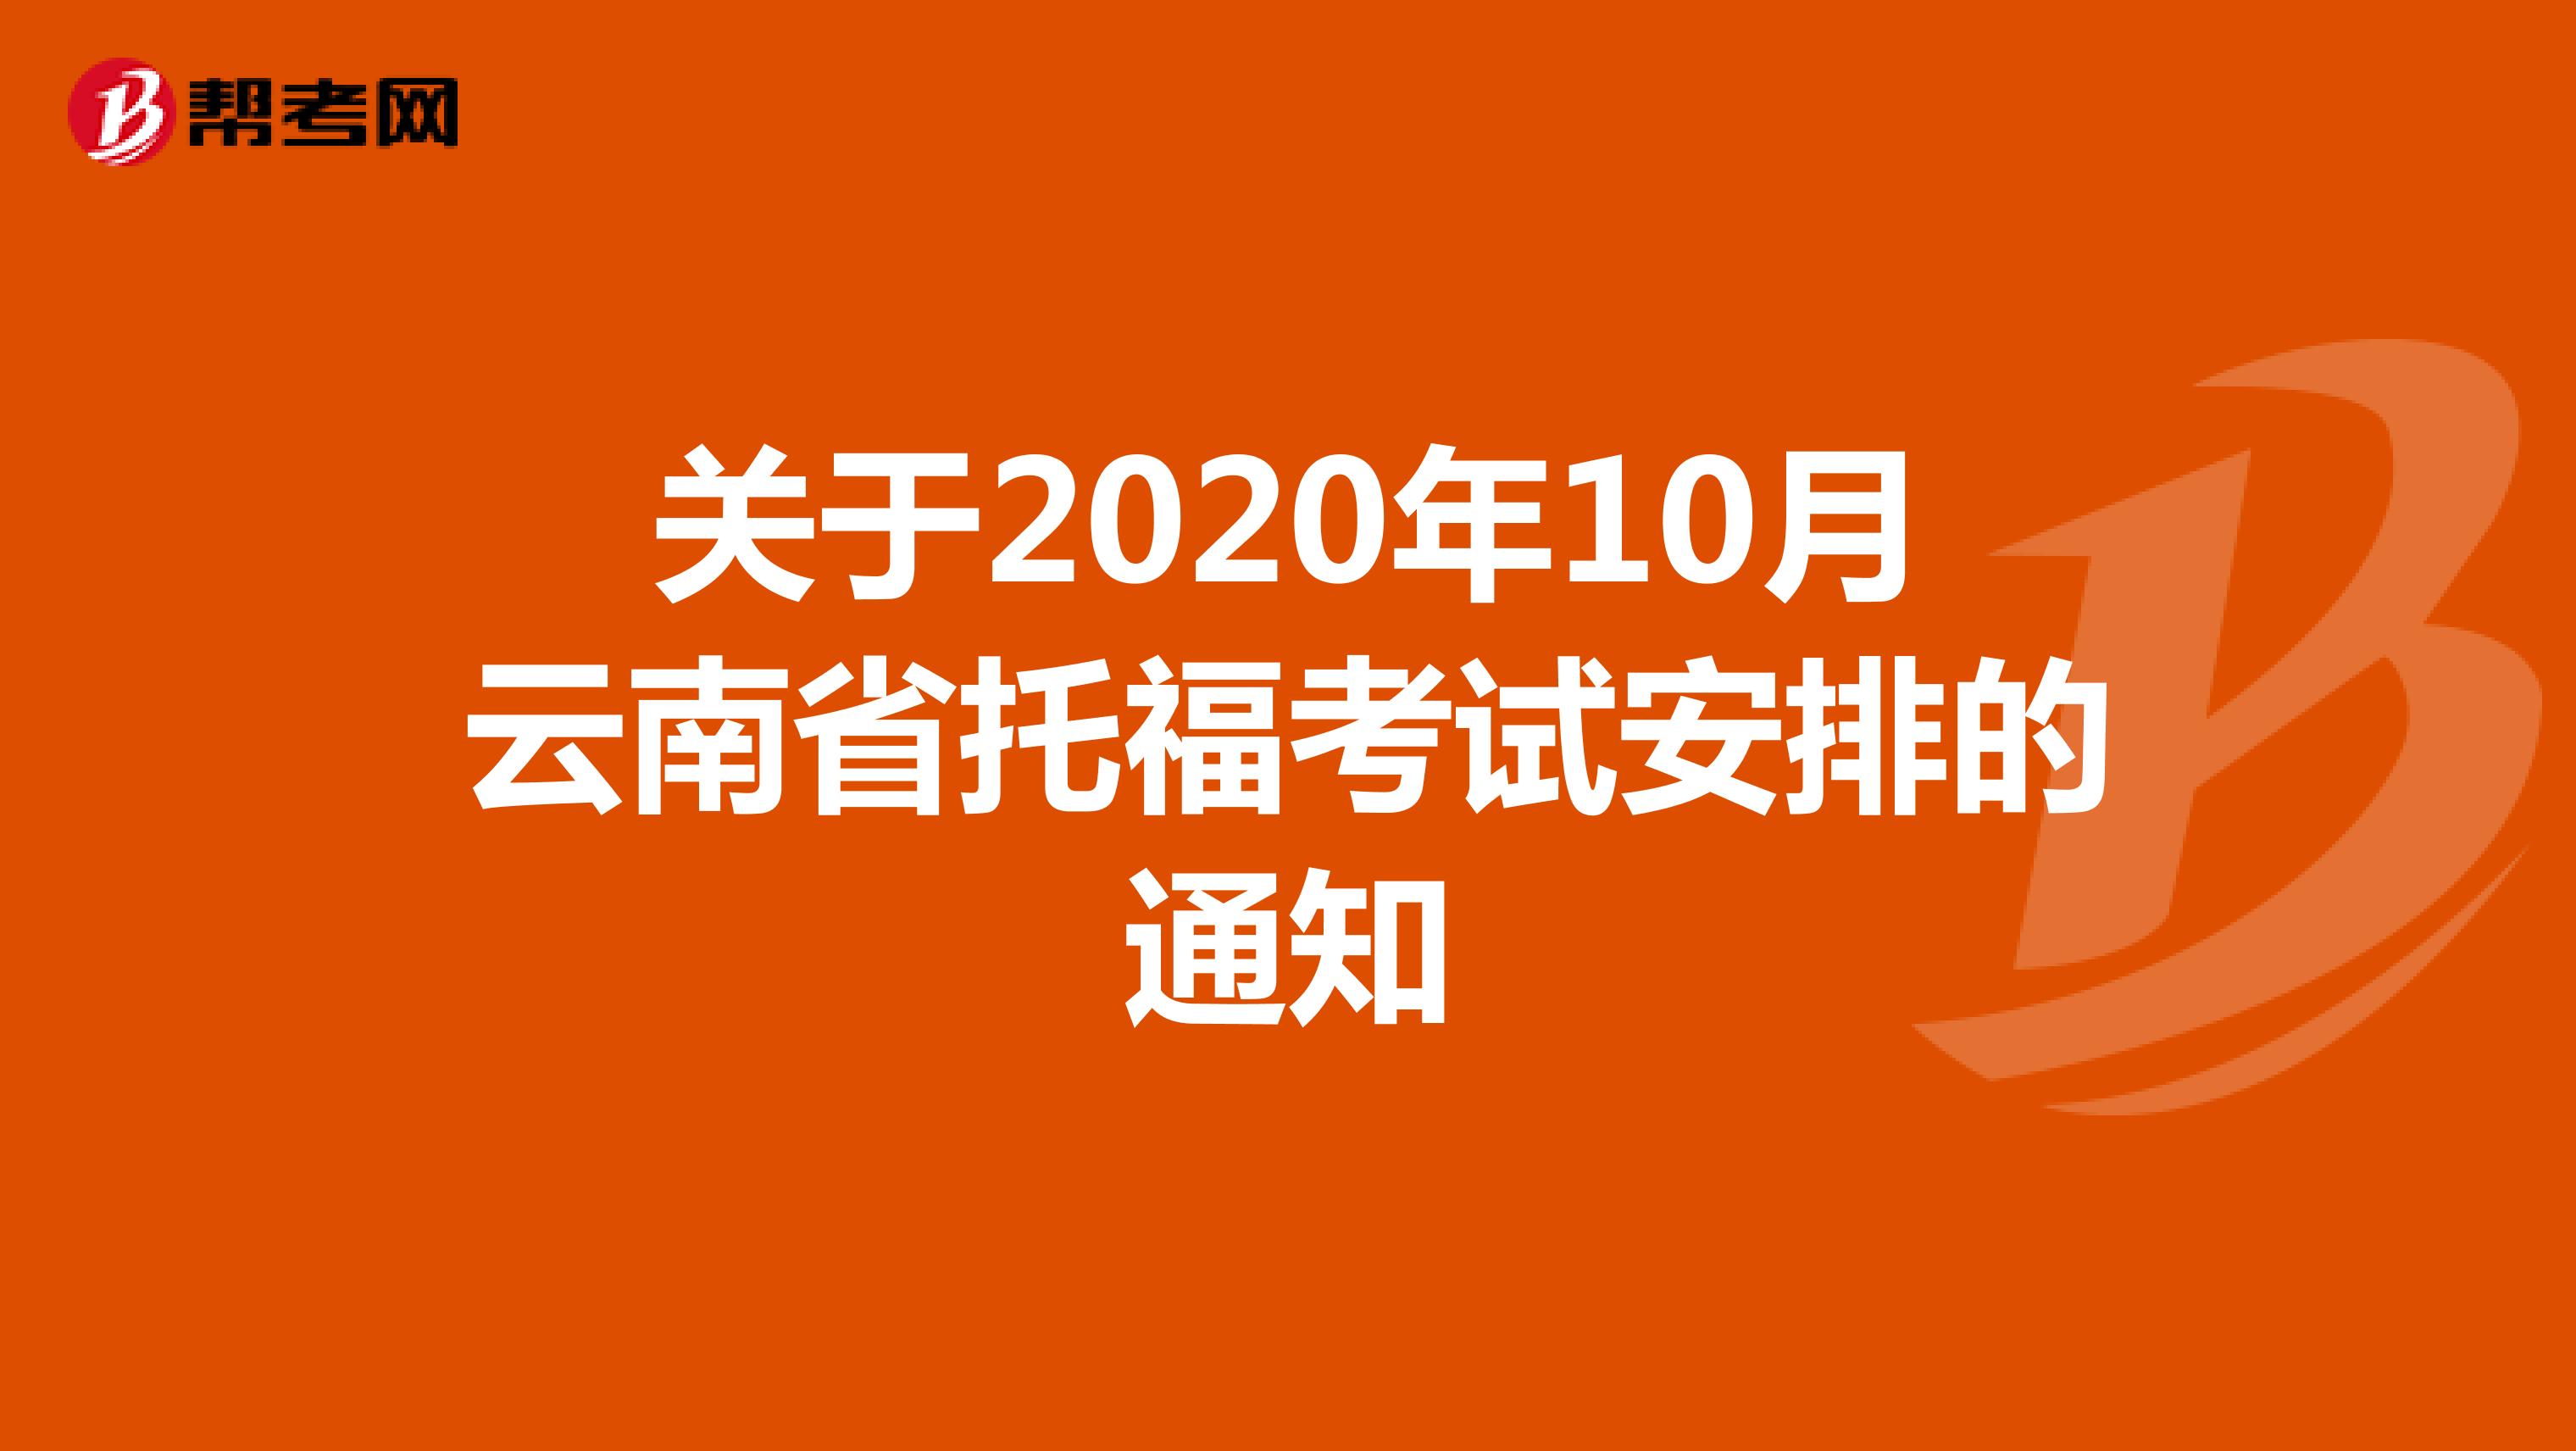 关于2020年10月云南省托福考试安排的通知